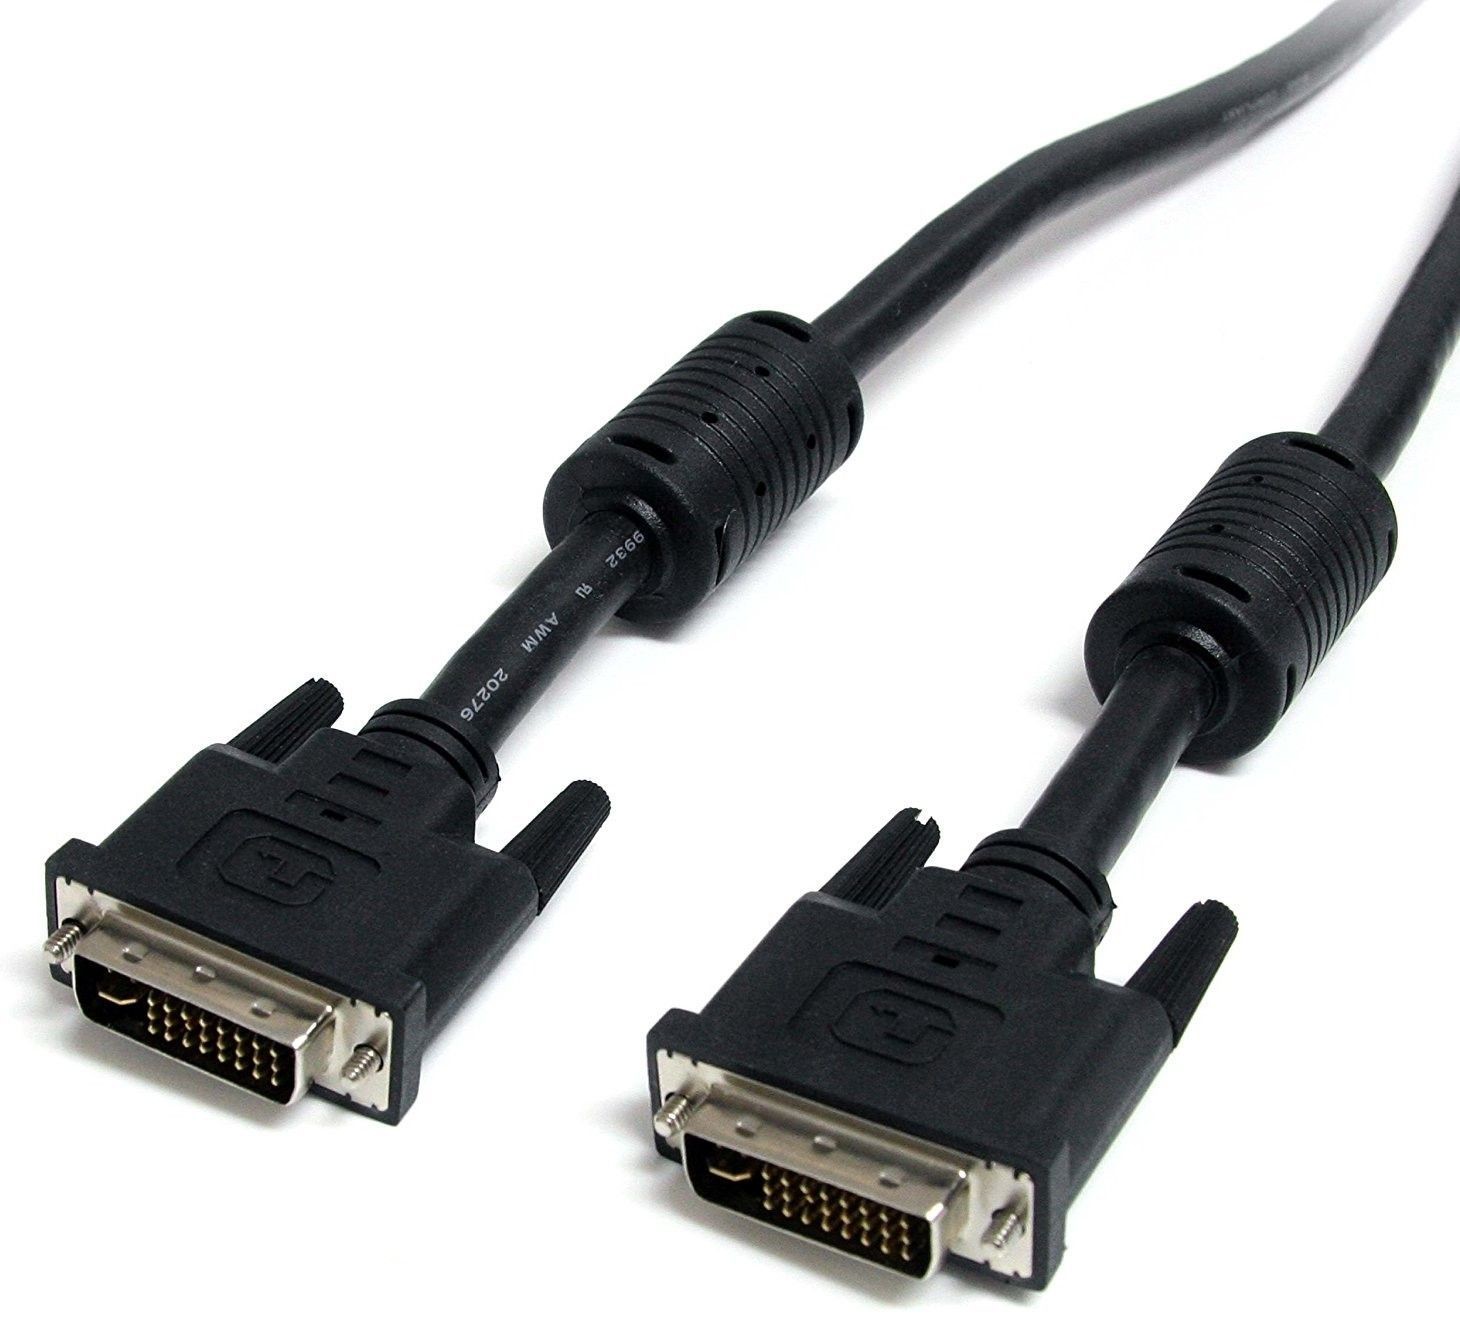 DVI-I kabel (mannetje) naar DVI-I mannetje (Dual Link)